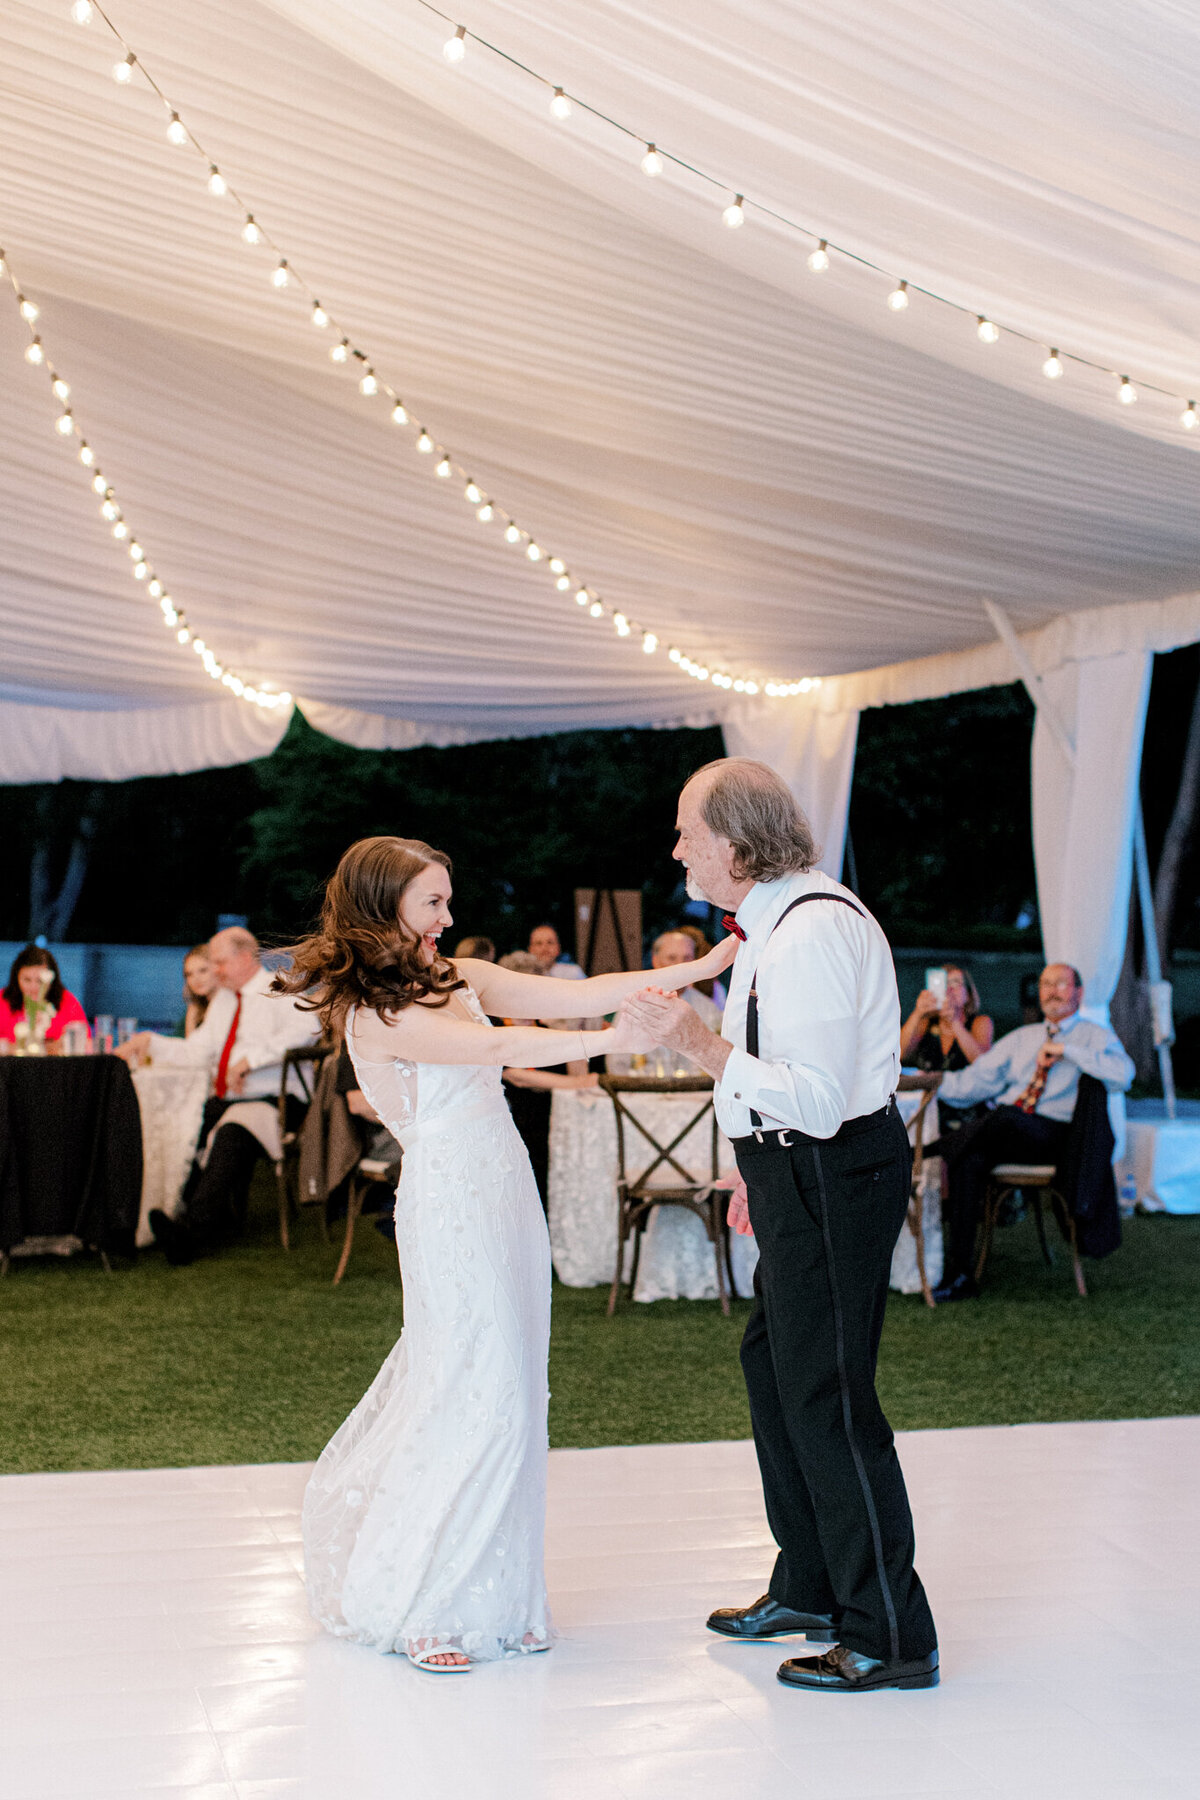 Gena & Matt's Wedding at the Dallas Arboretum | Dallas Wedding Photographer | Sami Kathryn Photography-248